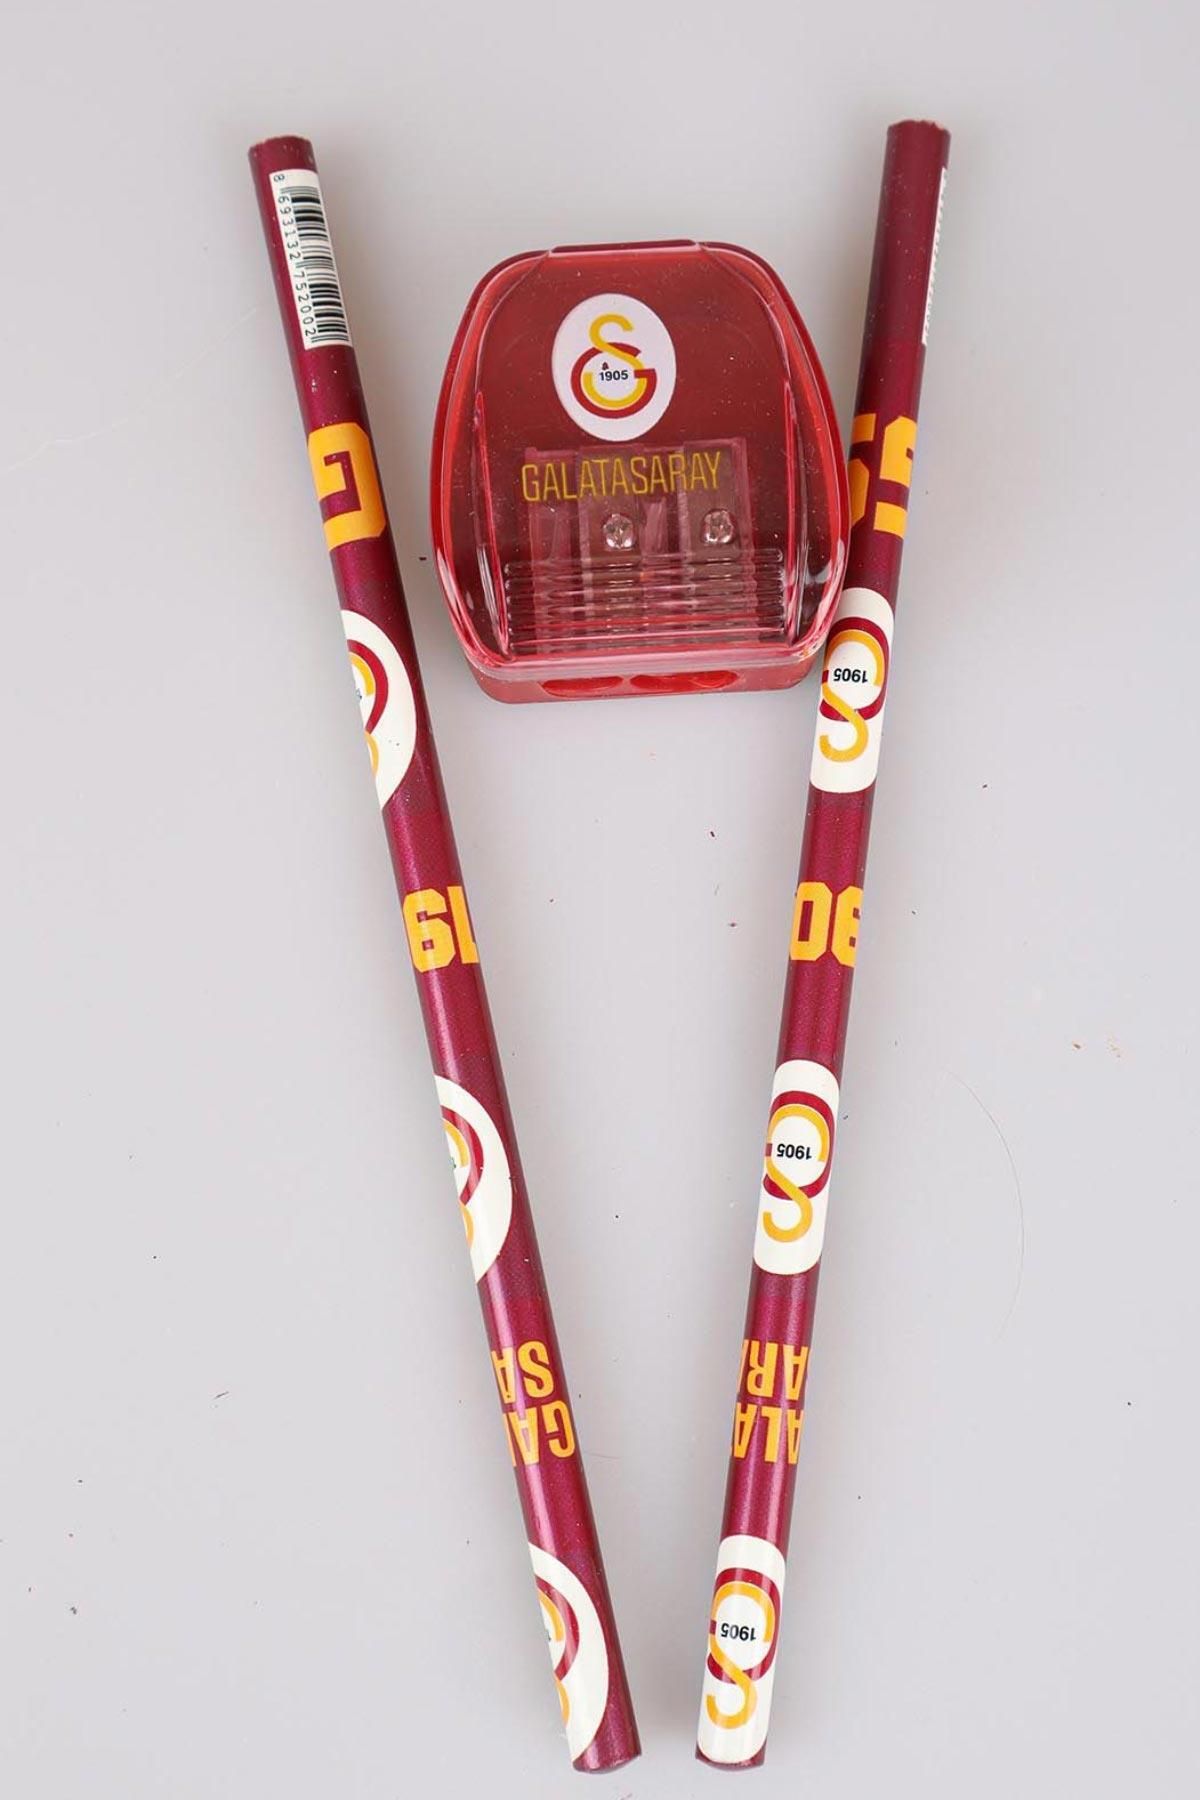 Galatasaray Lisanslı 2'li Kurşun Kalem Ve Kalemtraş Seti